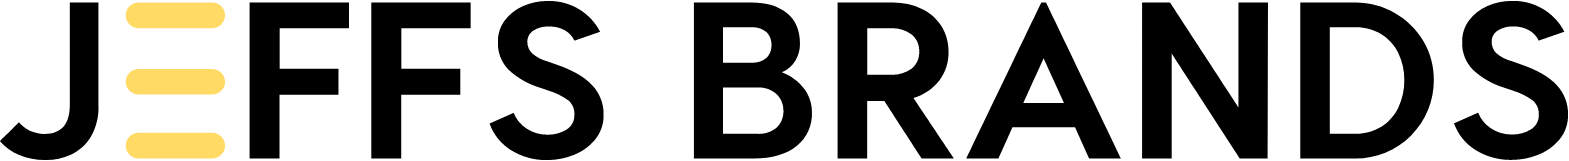 Jeffs' Brands logo large (transparent PNG)